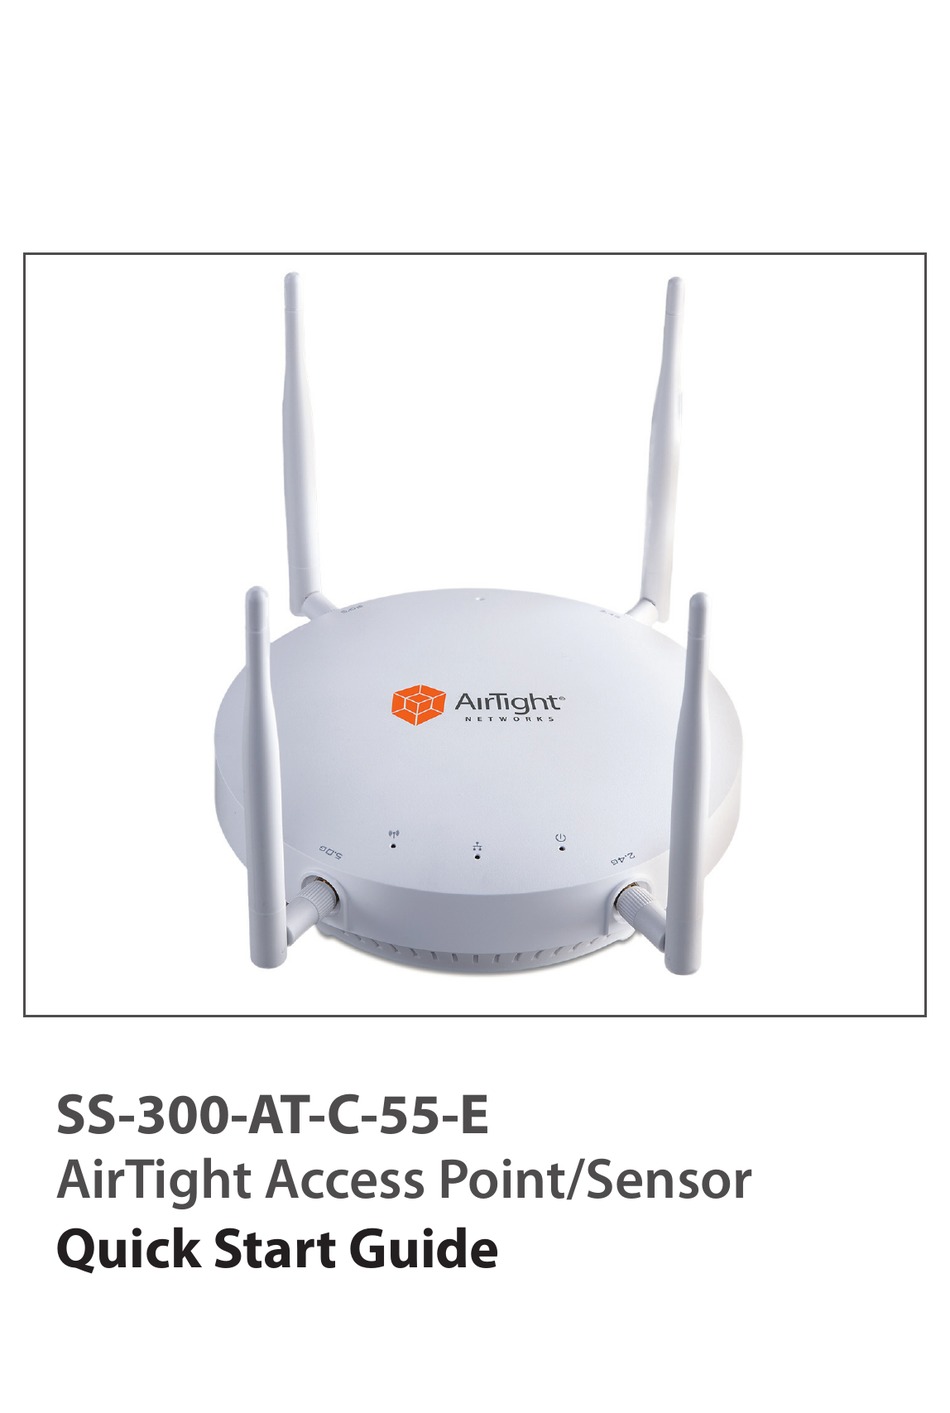 Airtight Networks SS-300-AT-C-55 